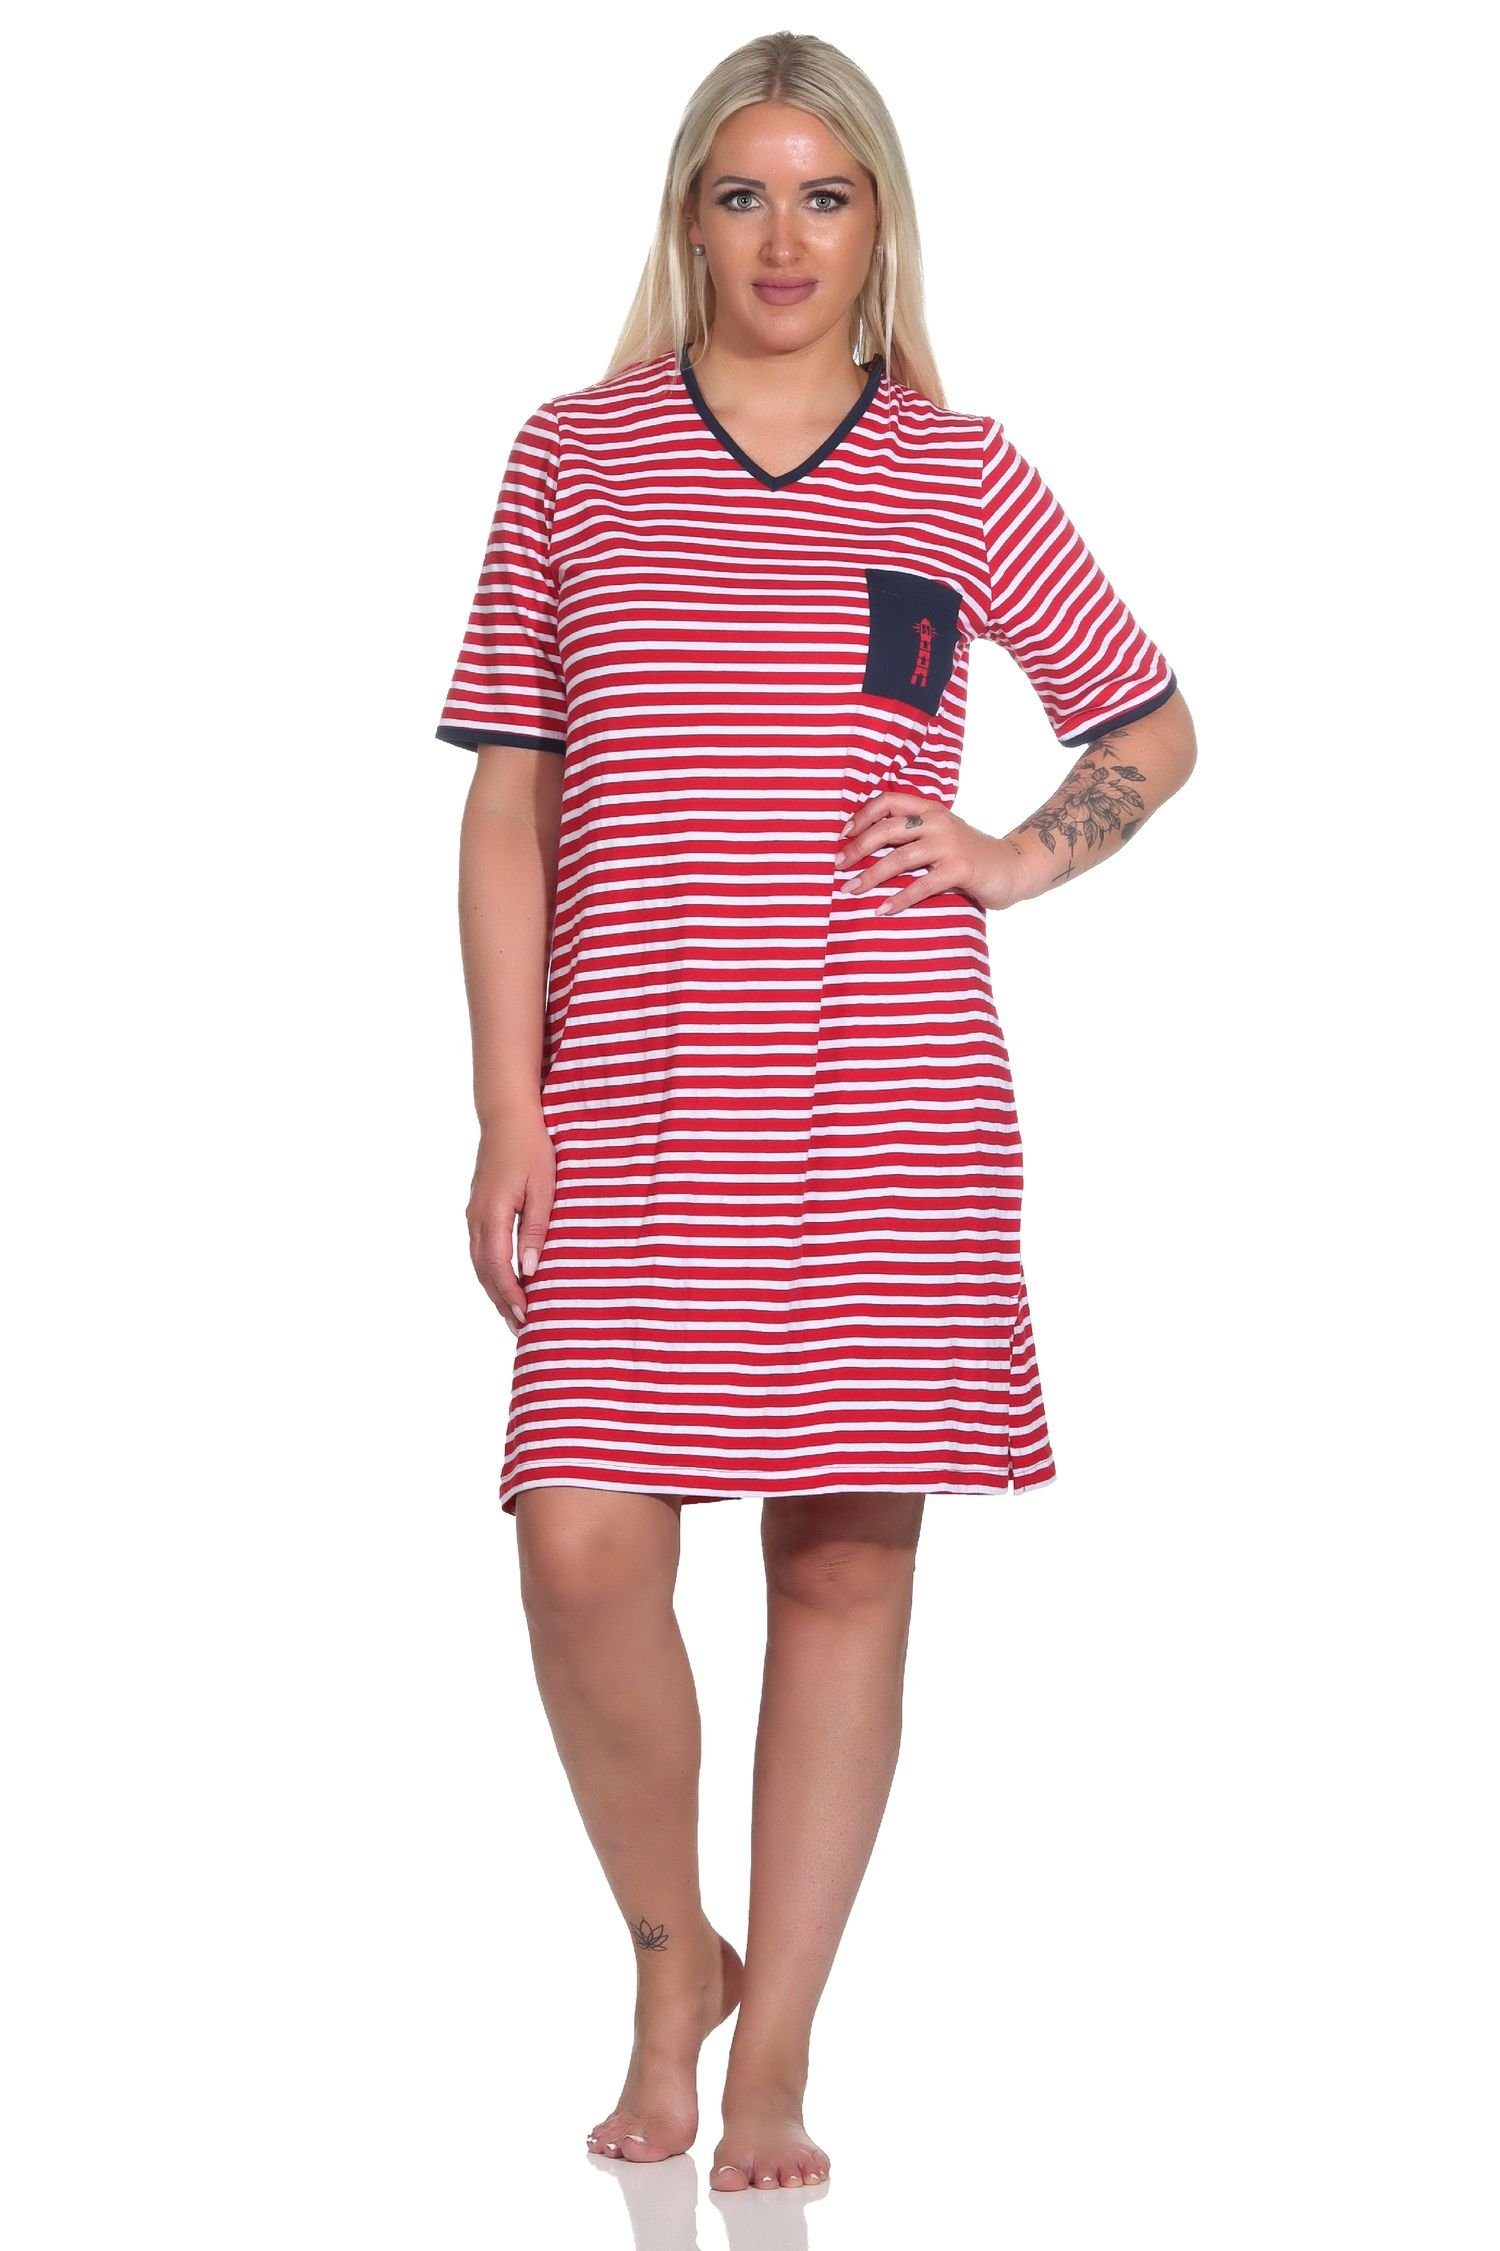 Normann Nachthemd Damen Kurzarm Nachthemd in maritimer Optik und mit Leuchtturm Motiv rot | Nachthemden